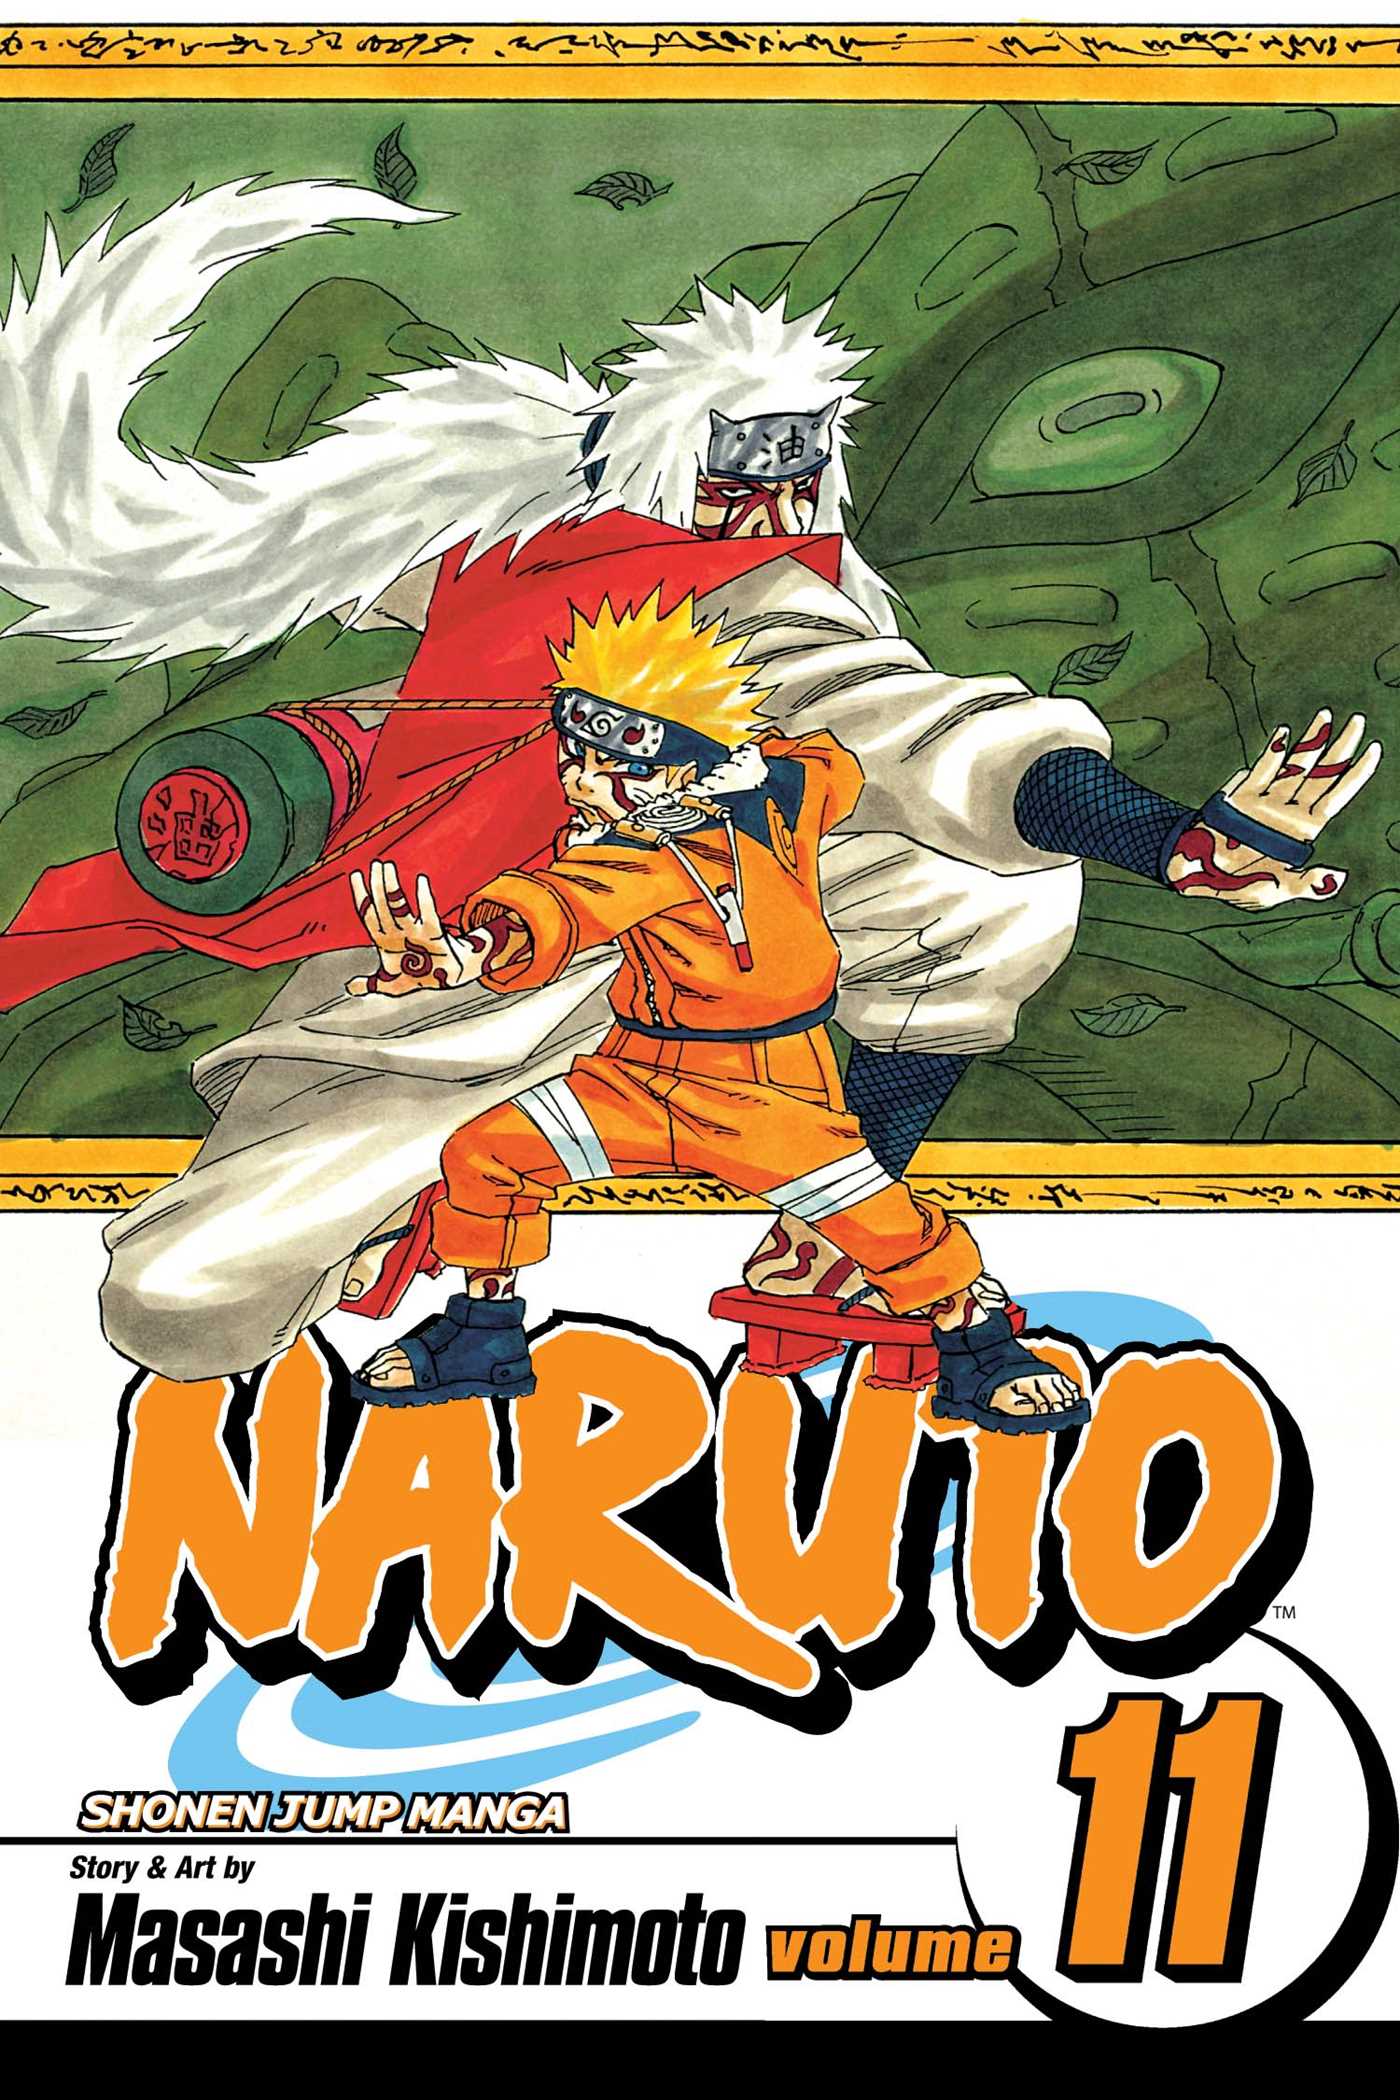 Naruto Vol. 11 | Kishimoto, Masashi (Auteur)